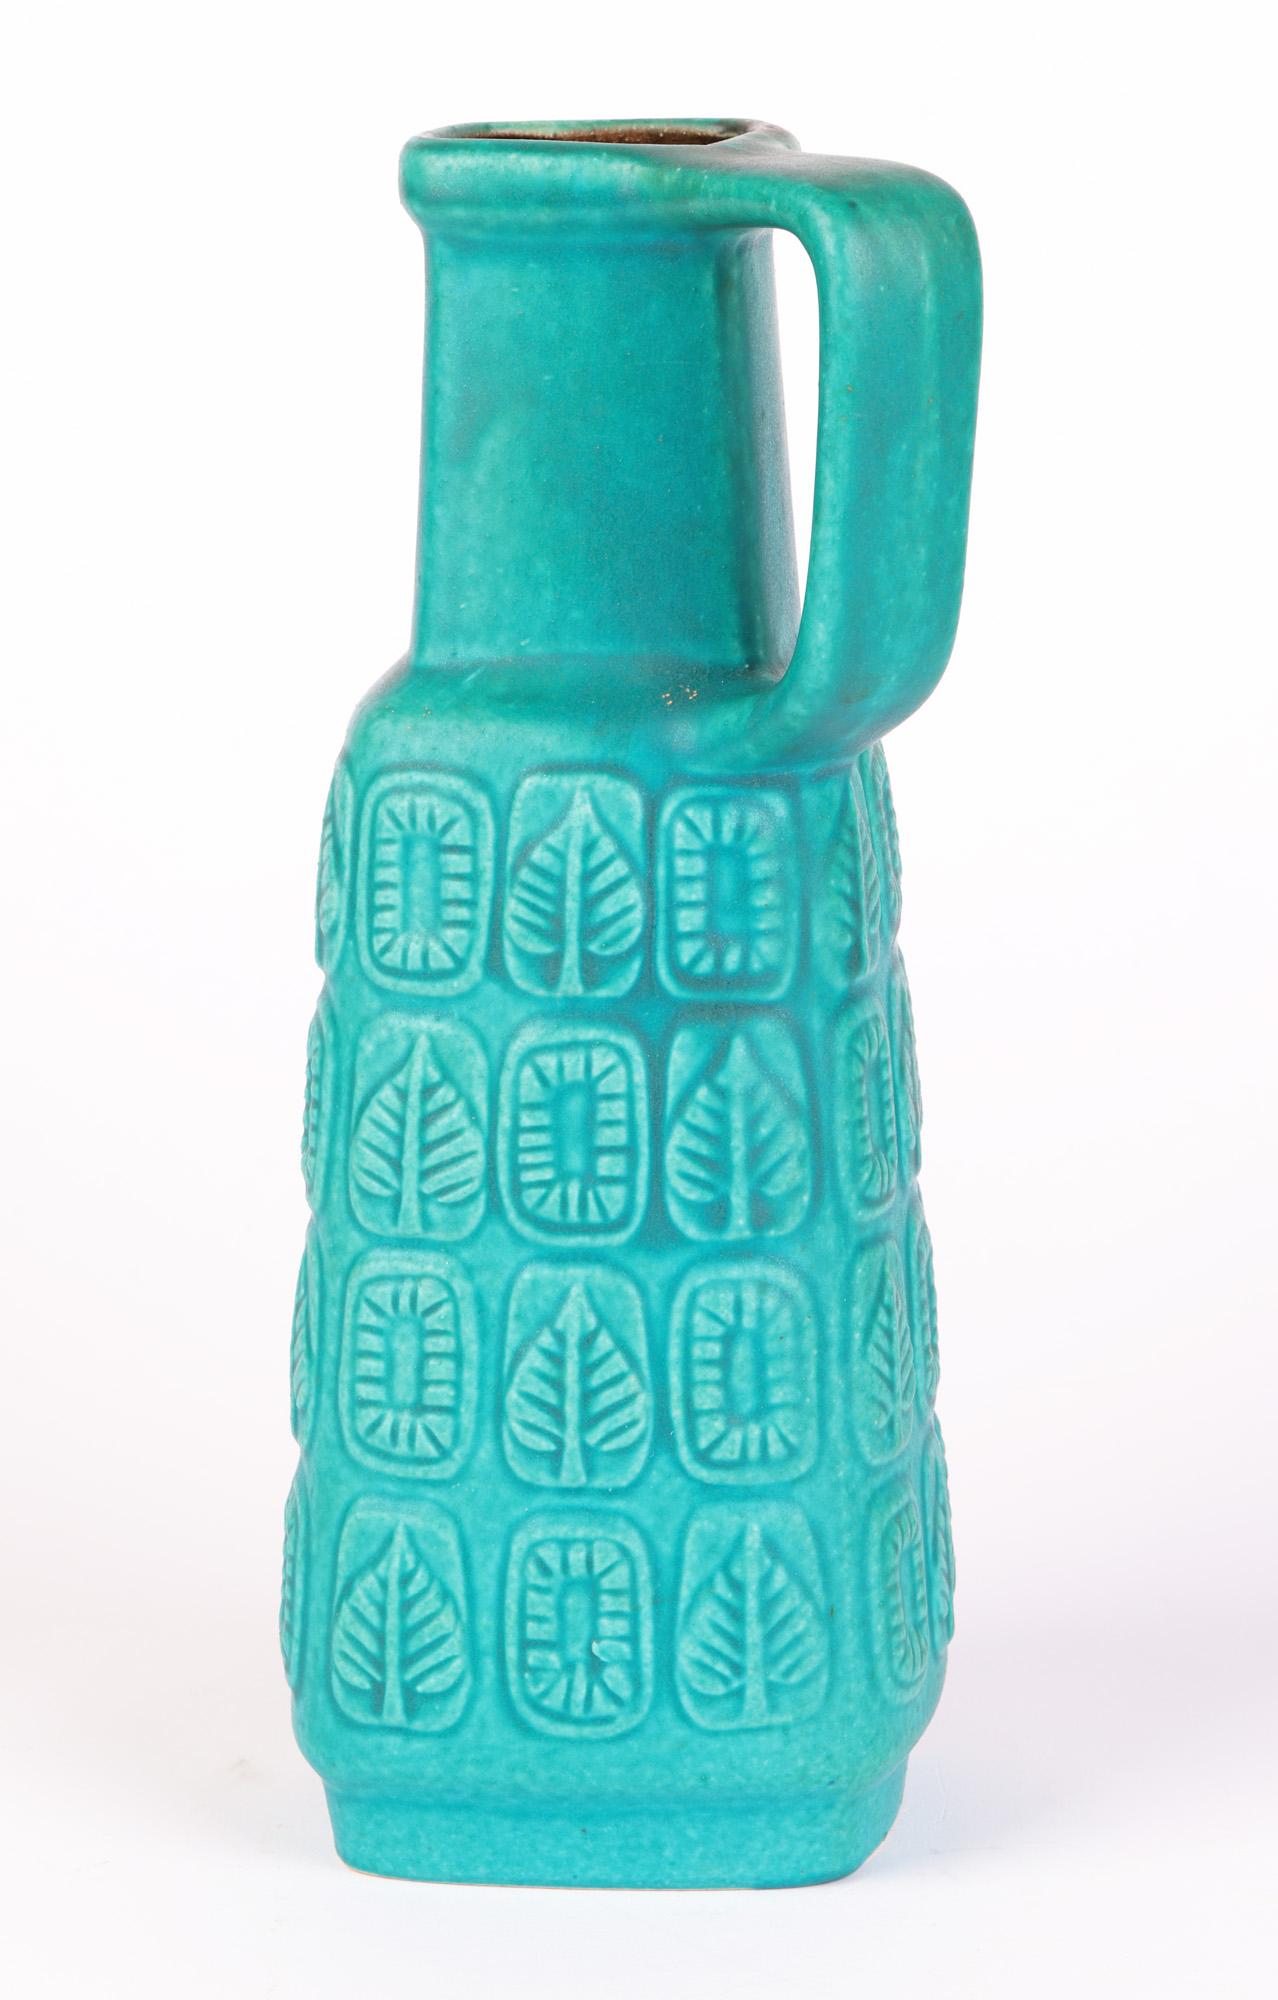 Bay Keramik German Mid-Century Turquoise Glazed Molded Pottery Vase 9